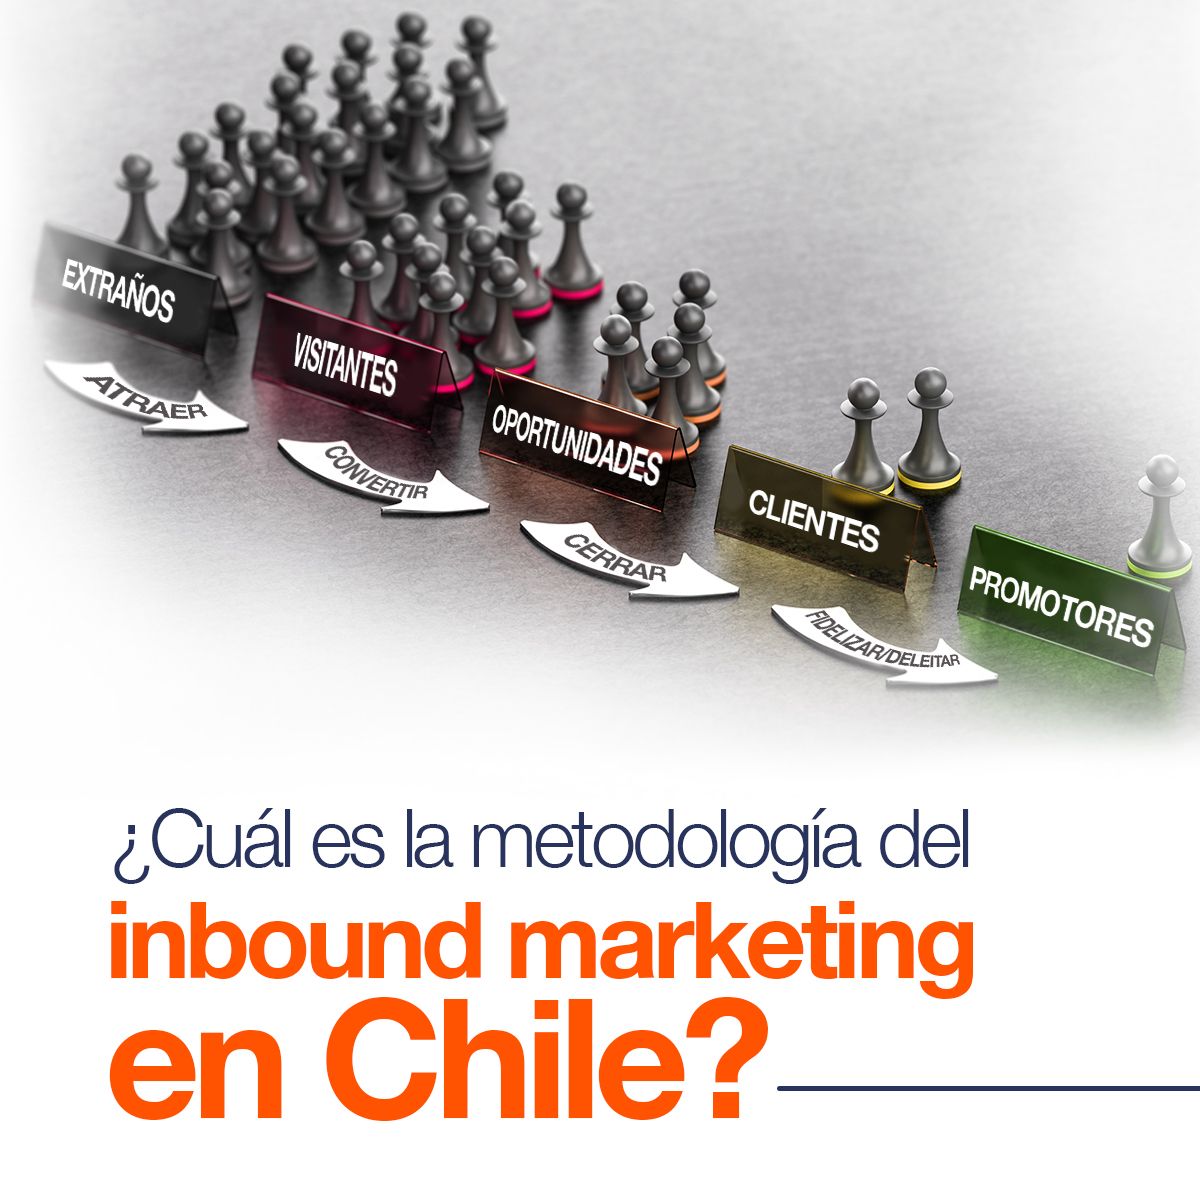 ¿Cuál es la metodología del inbound marketing en Chile?